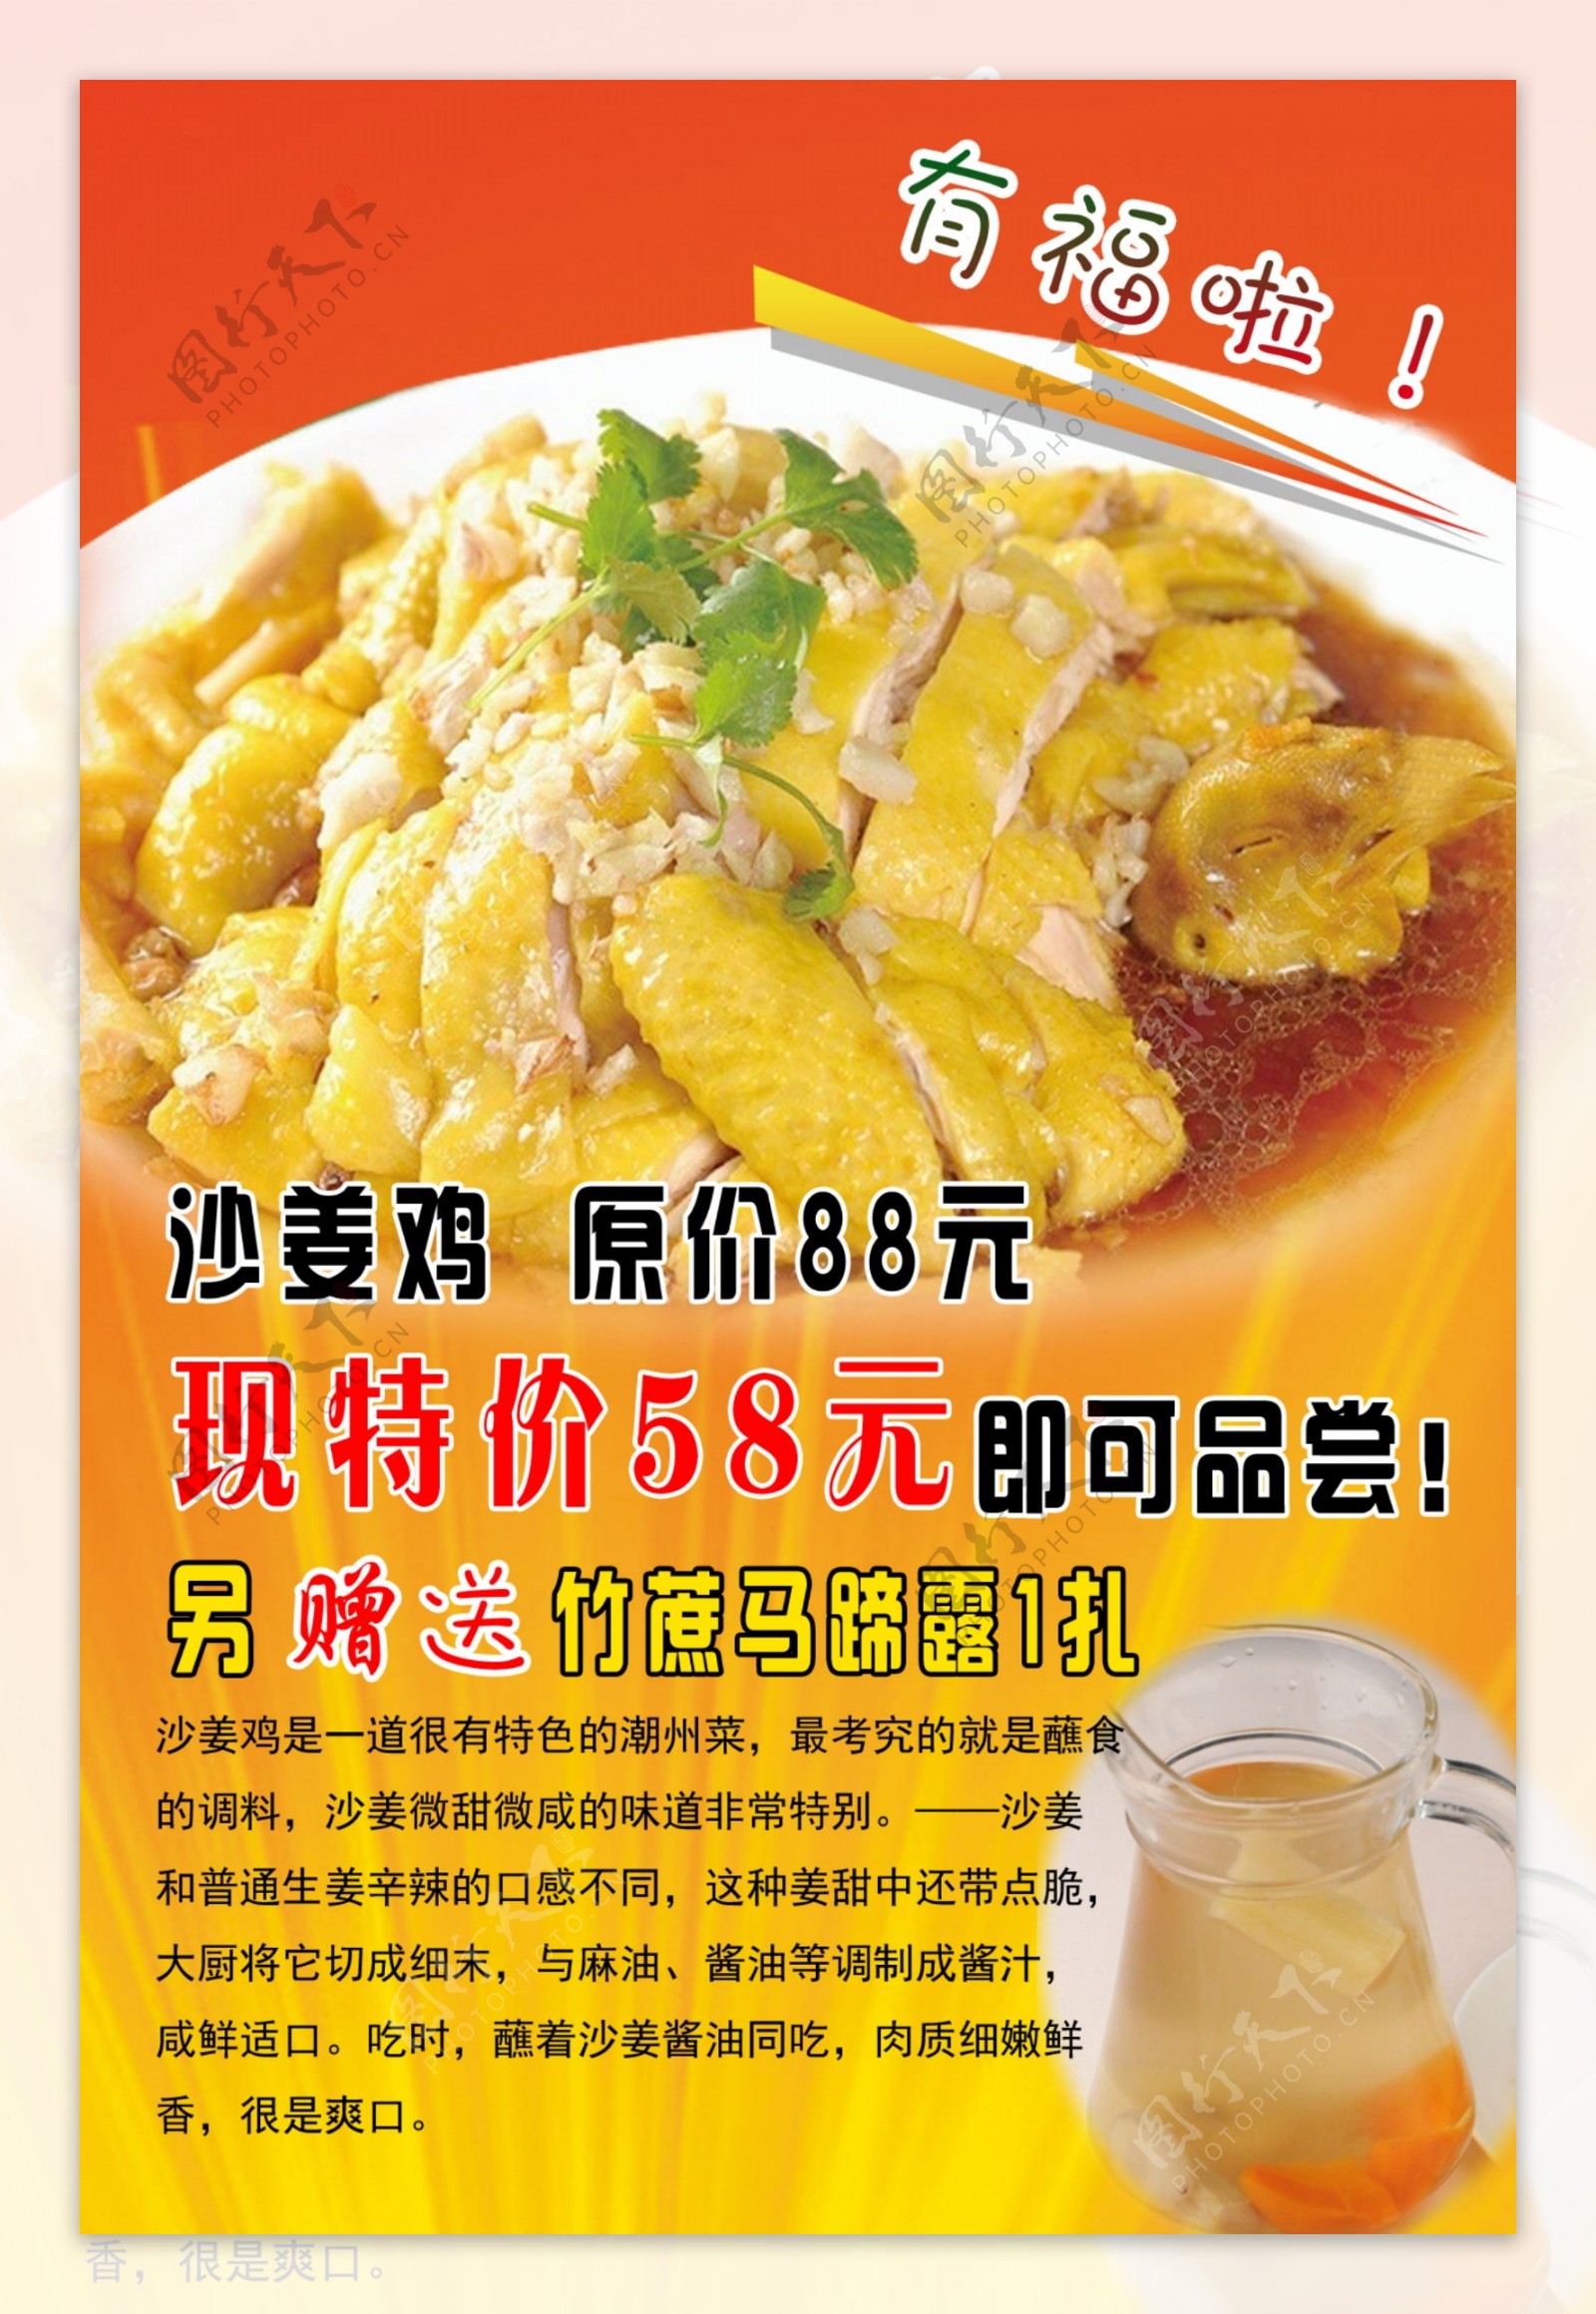 沙姜鸡广告图片